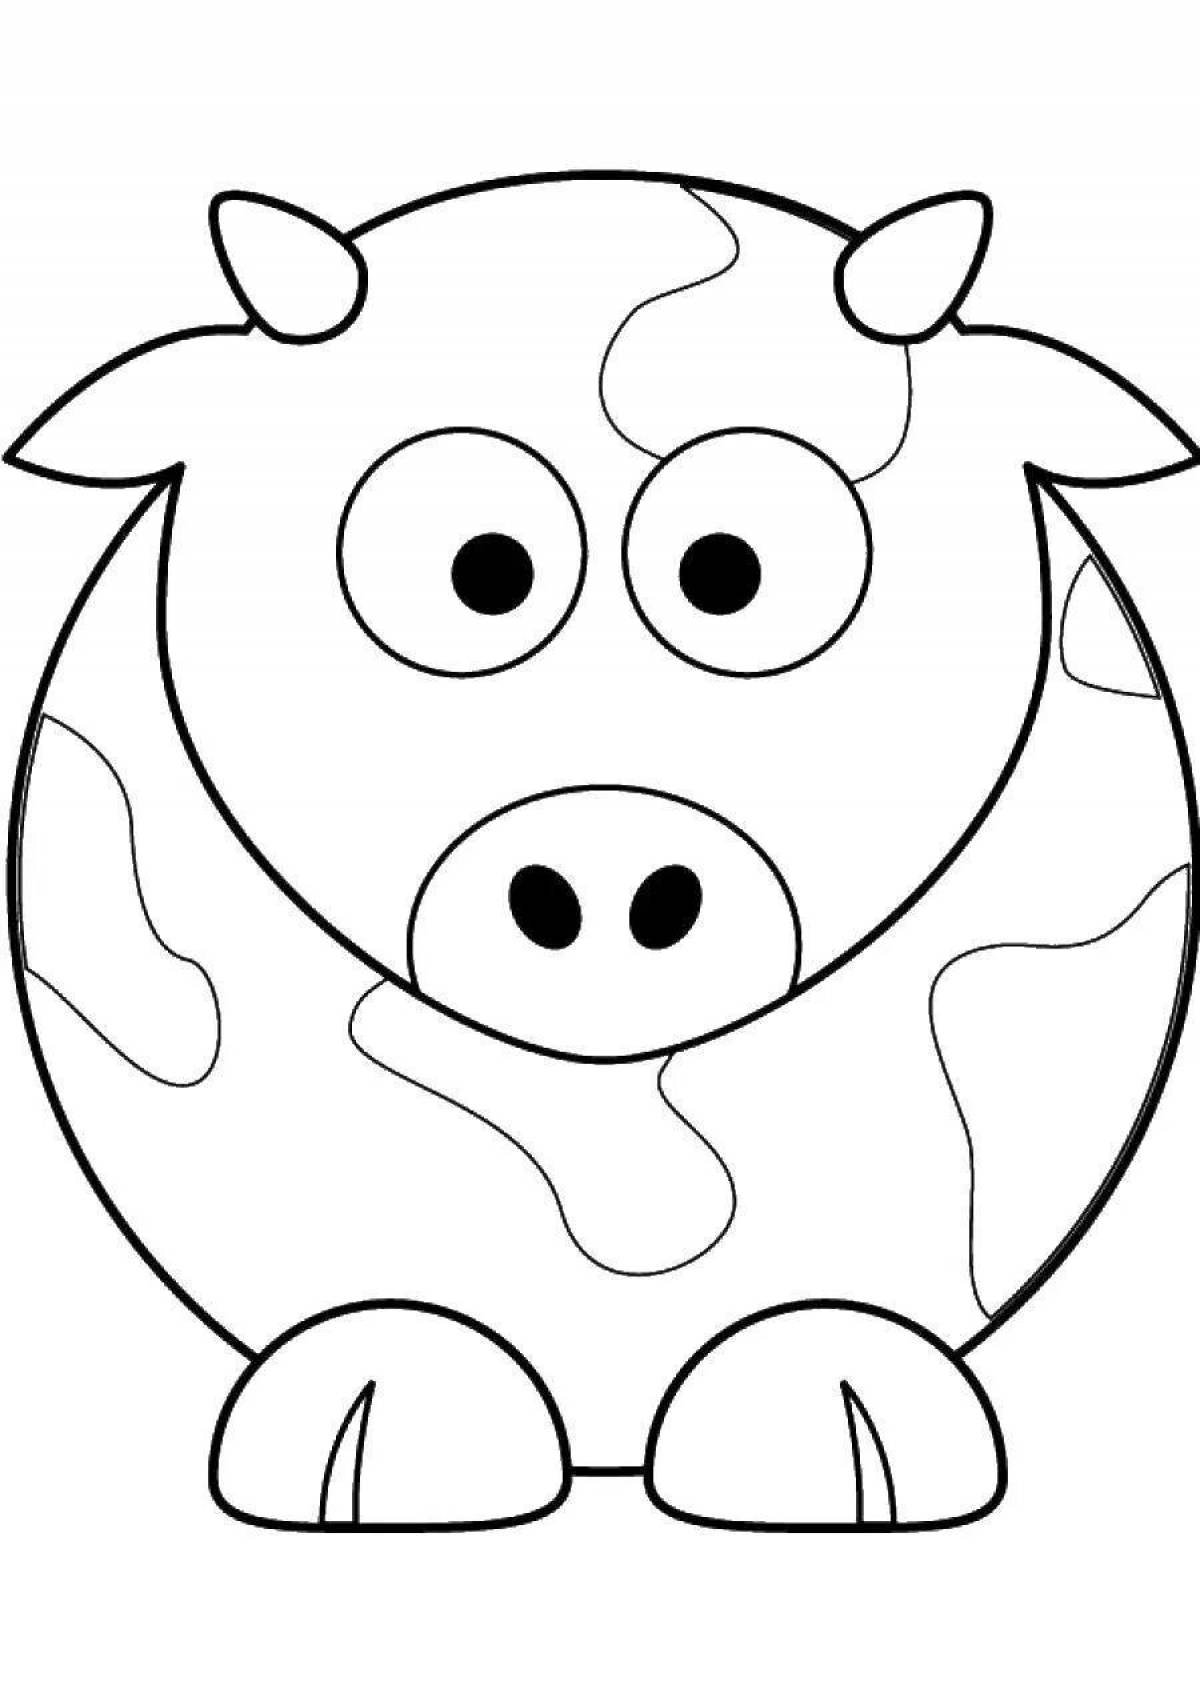 Распечатать коровку раскраску. Раскраски для малышей. Раскраска корова. Раскраски животных для детей. Коровка. Раскраска.